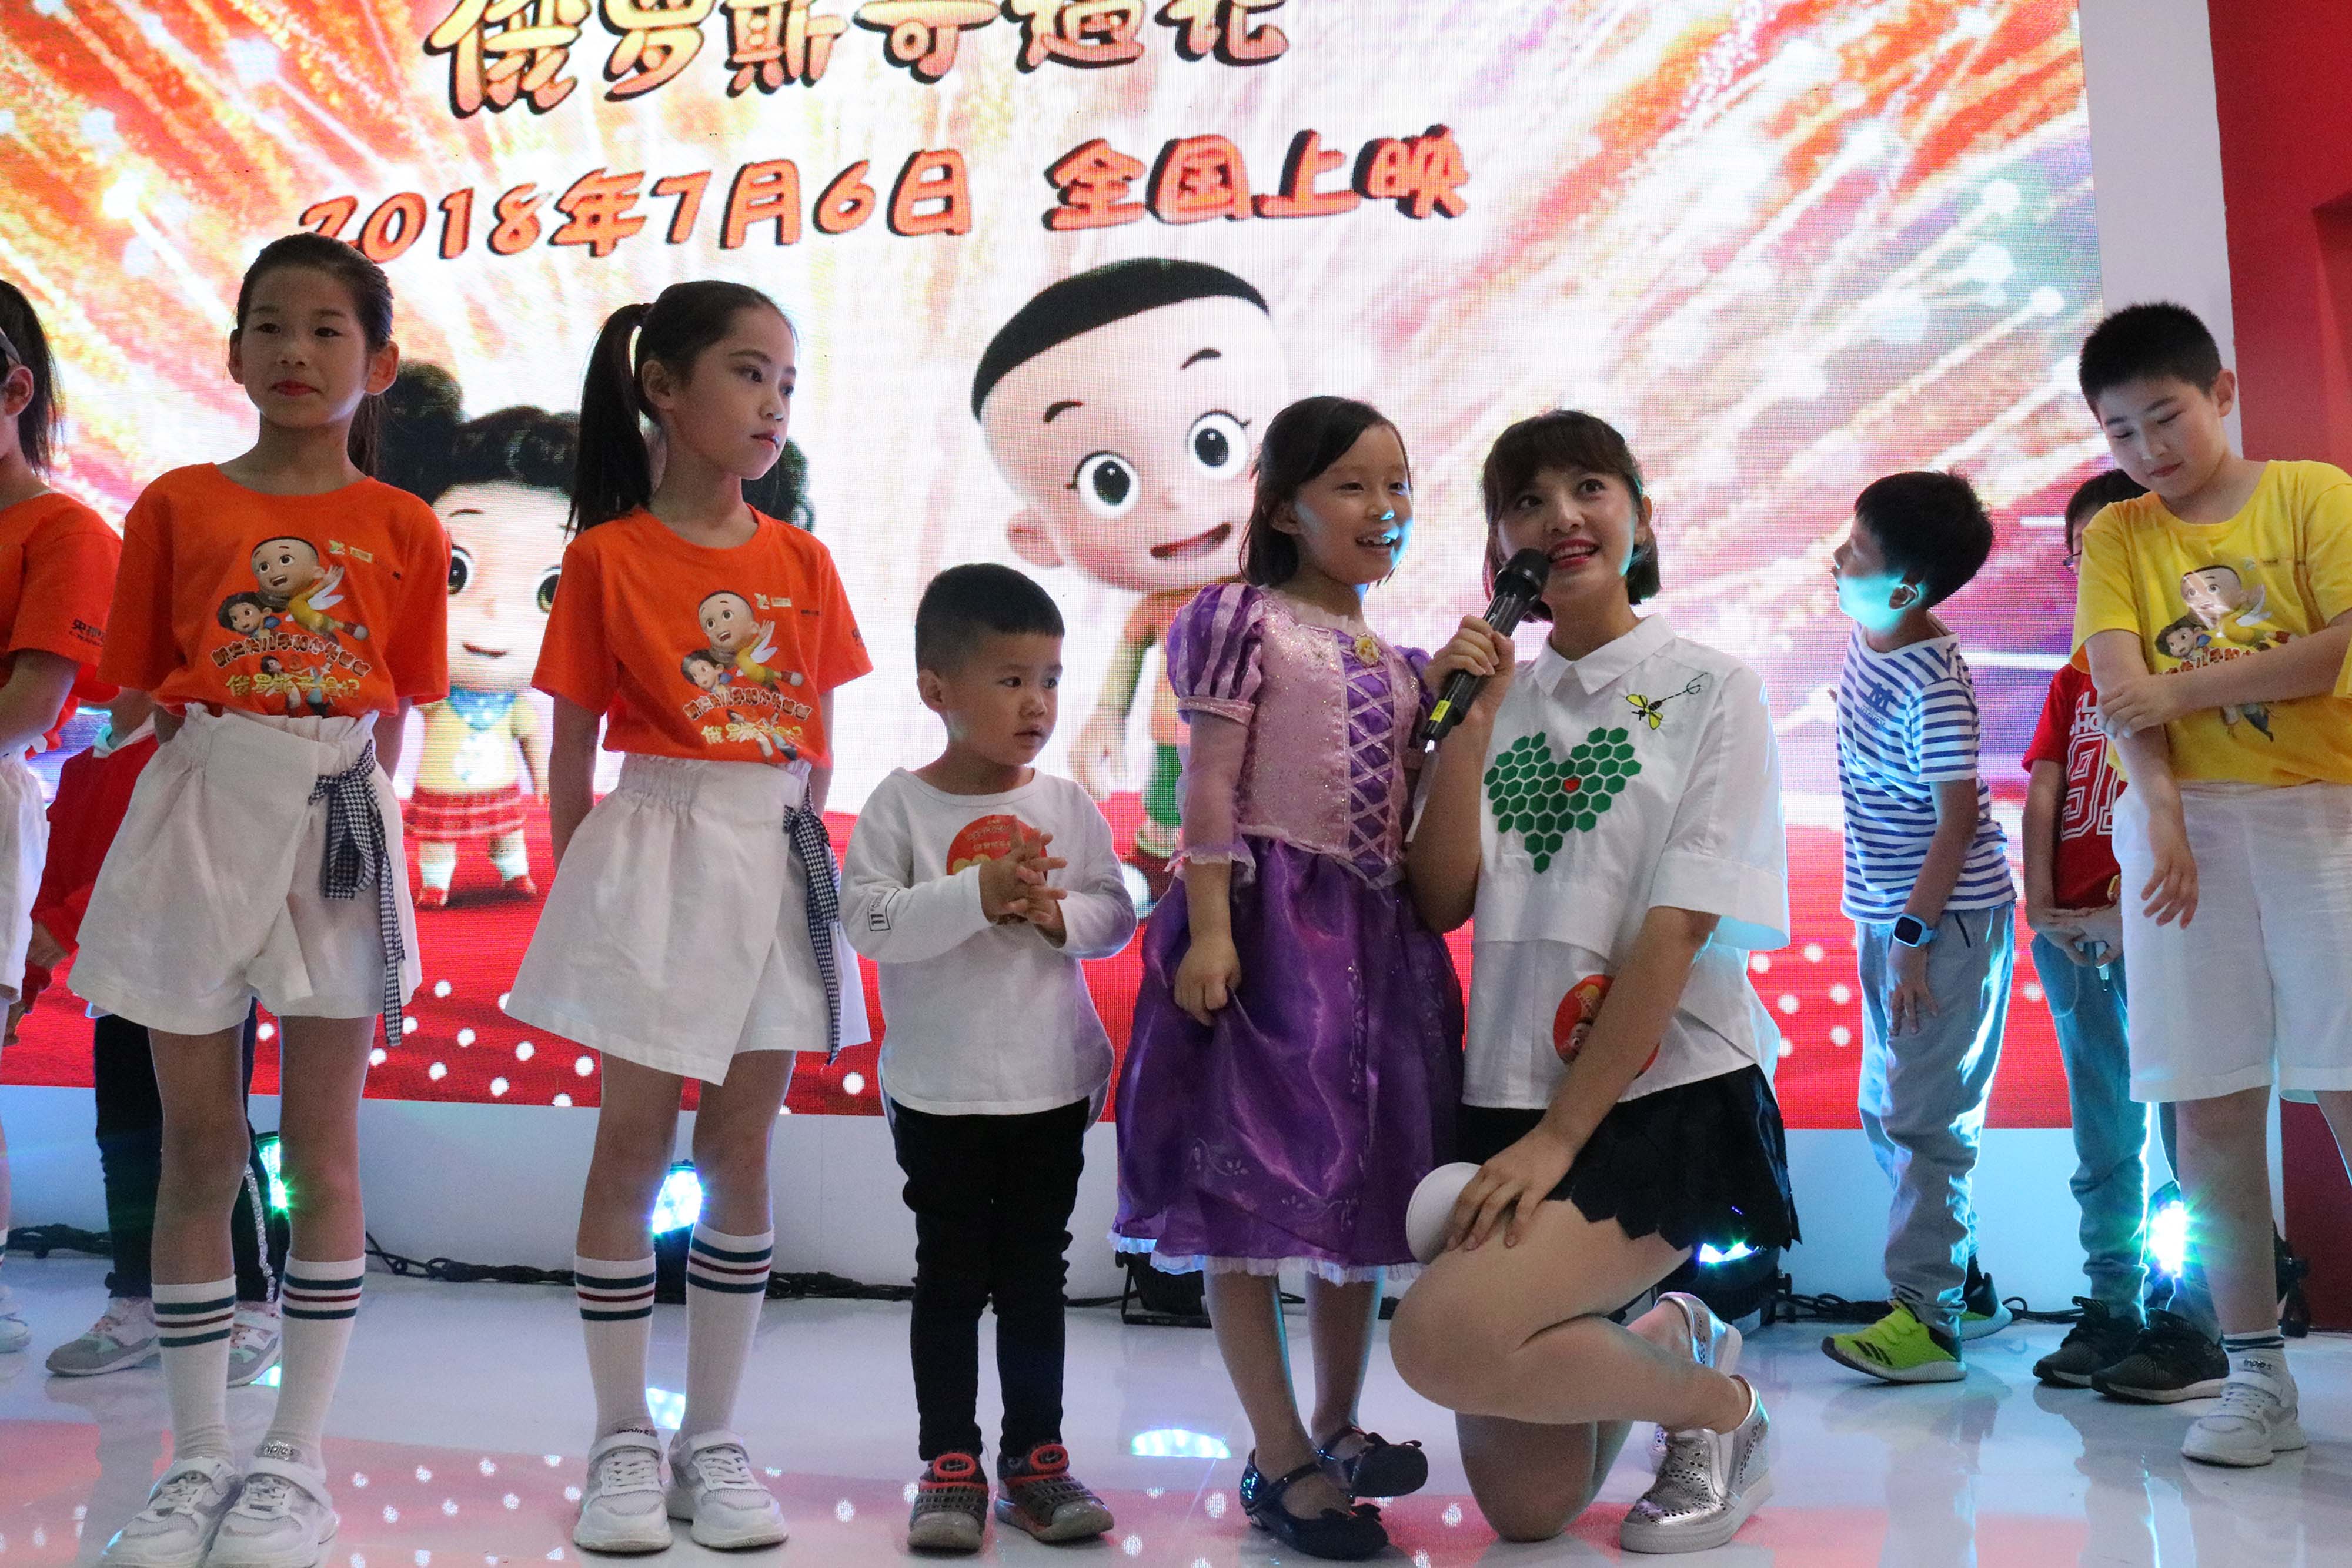 主持人鞠萍姐姐现身会场,和小朋友们一起合唱《大头儿子和小头爸爸》